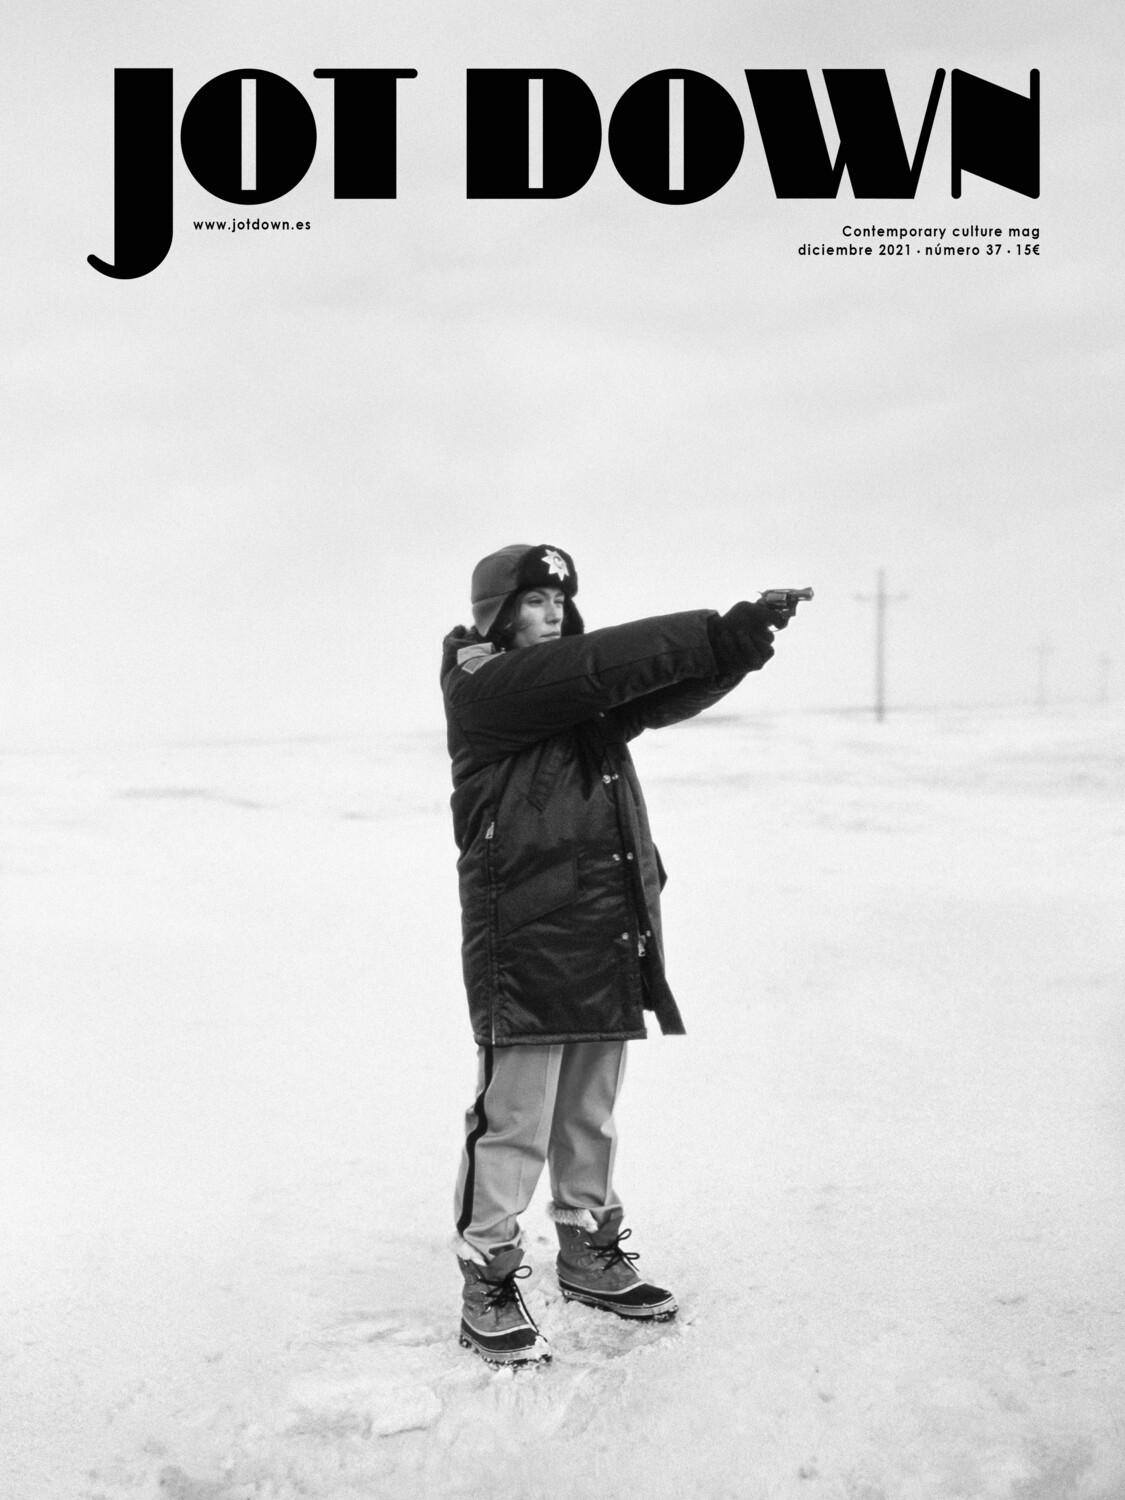 Revista Jot Down nº37 | Diciembre 2021 "Especial «Círculos polares»"